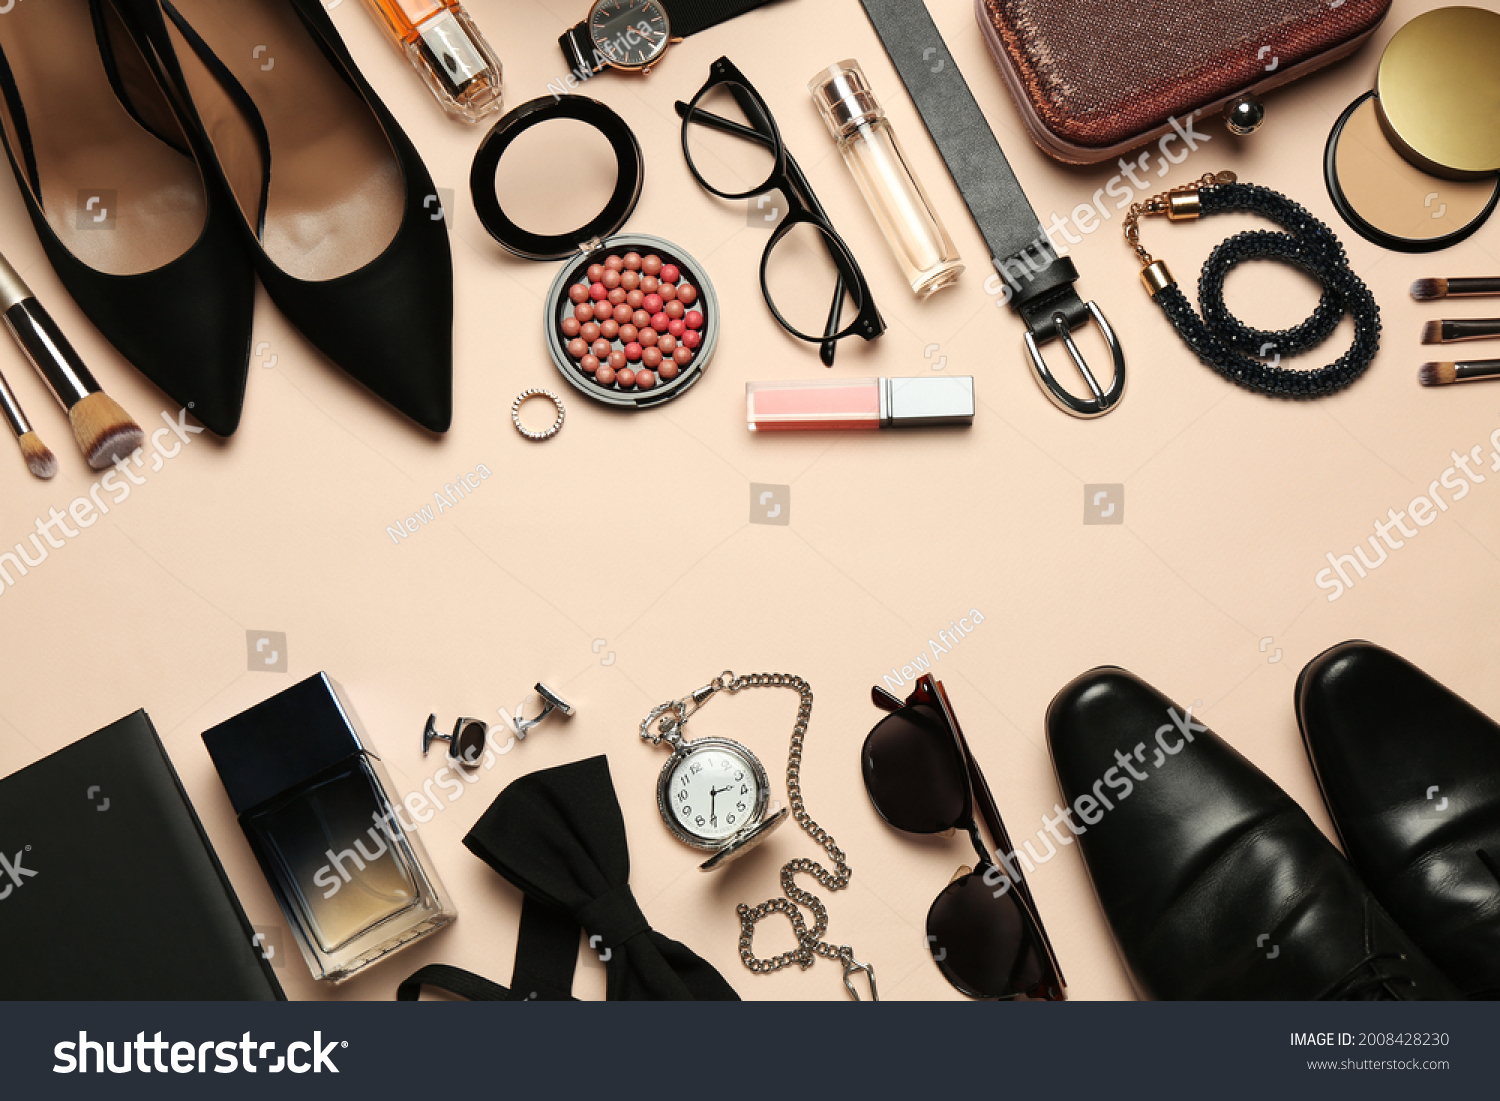 1,058,593 Luxury accessories Images, Stock Photos & Vectors | Shutterstock